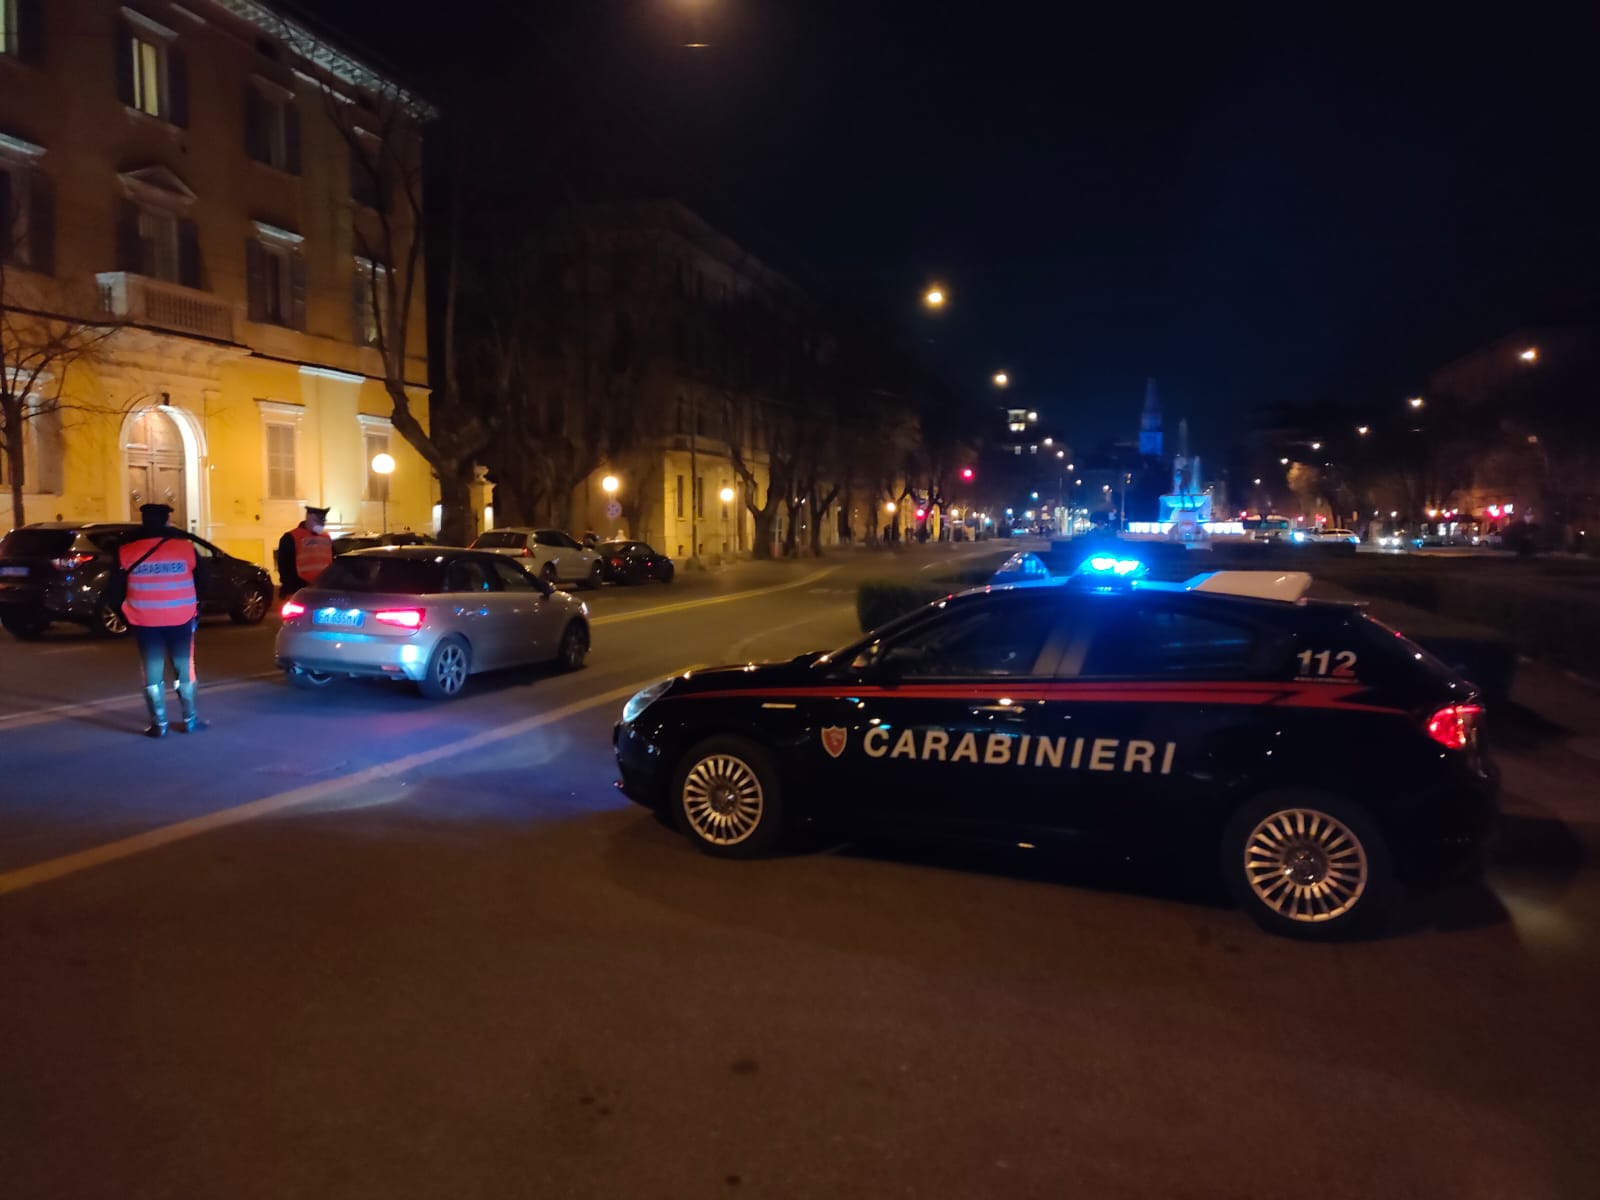  Trovato con oltre oltre 600 grammi di marijuana, 62enne arrestato dai Carabinieri